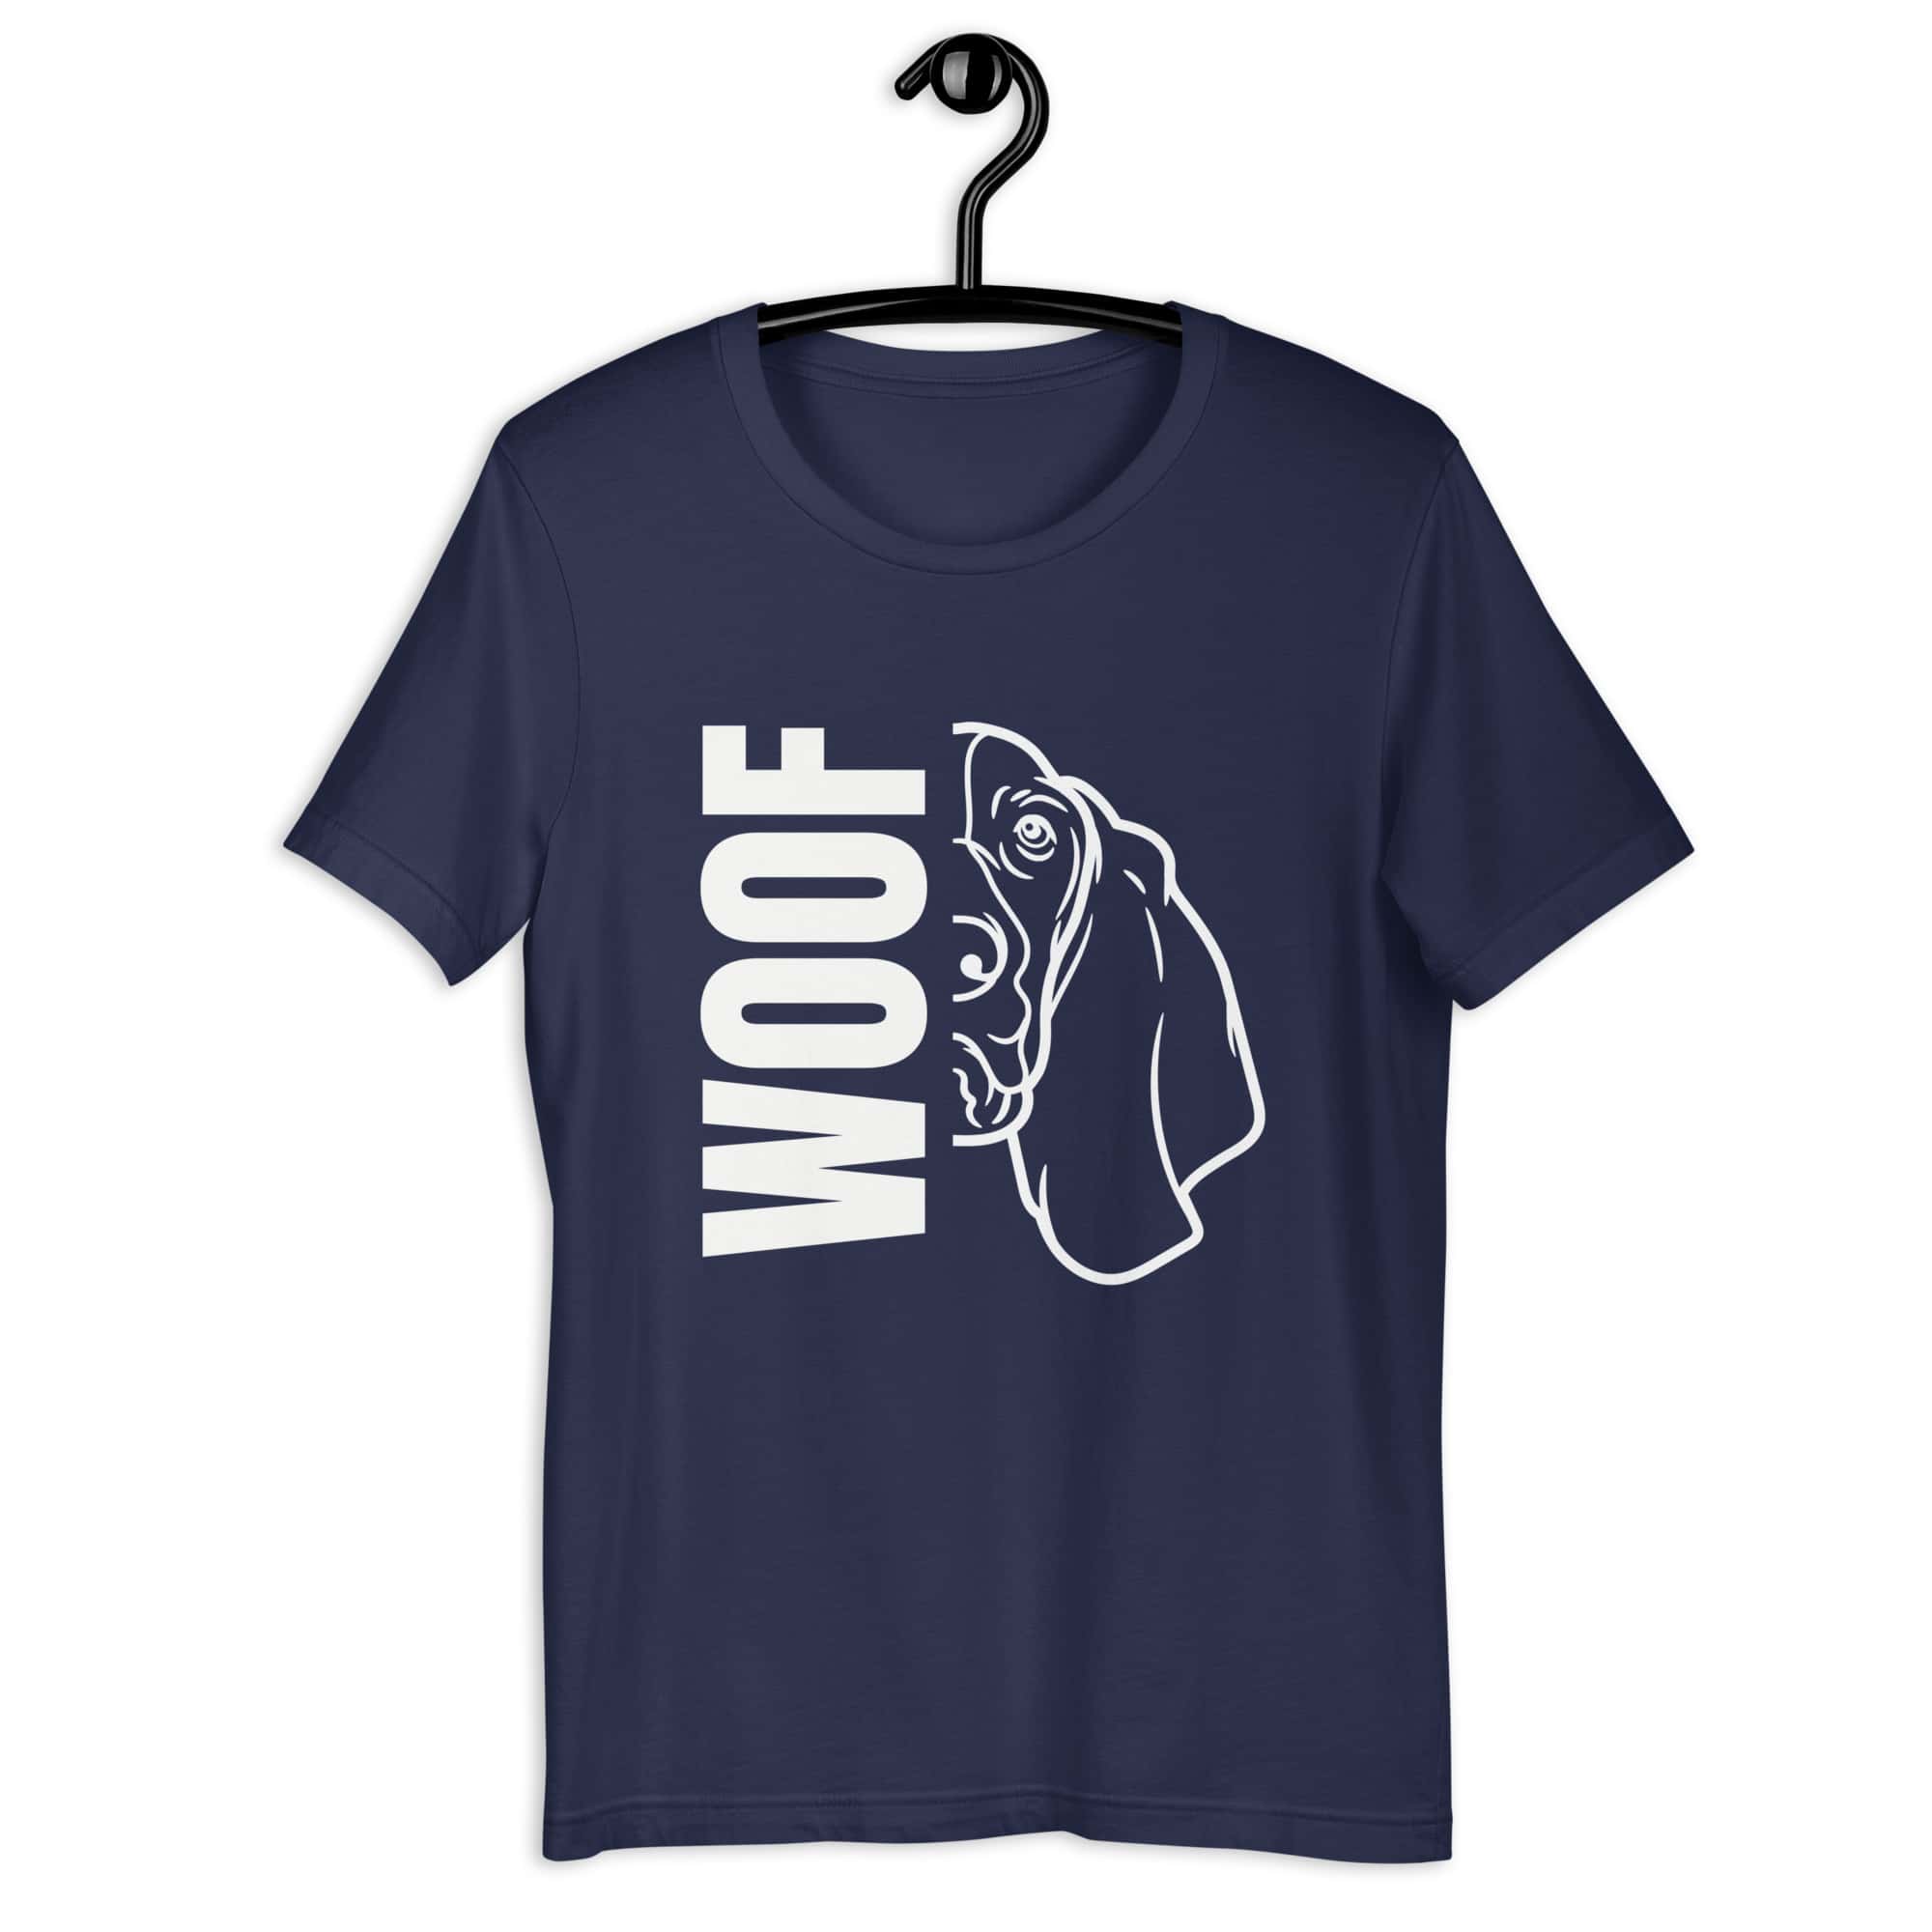 Woof Basset Hound Unisex T-Shirt navy